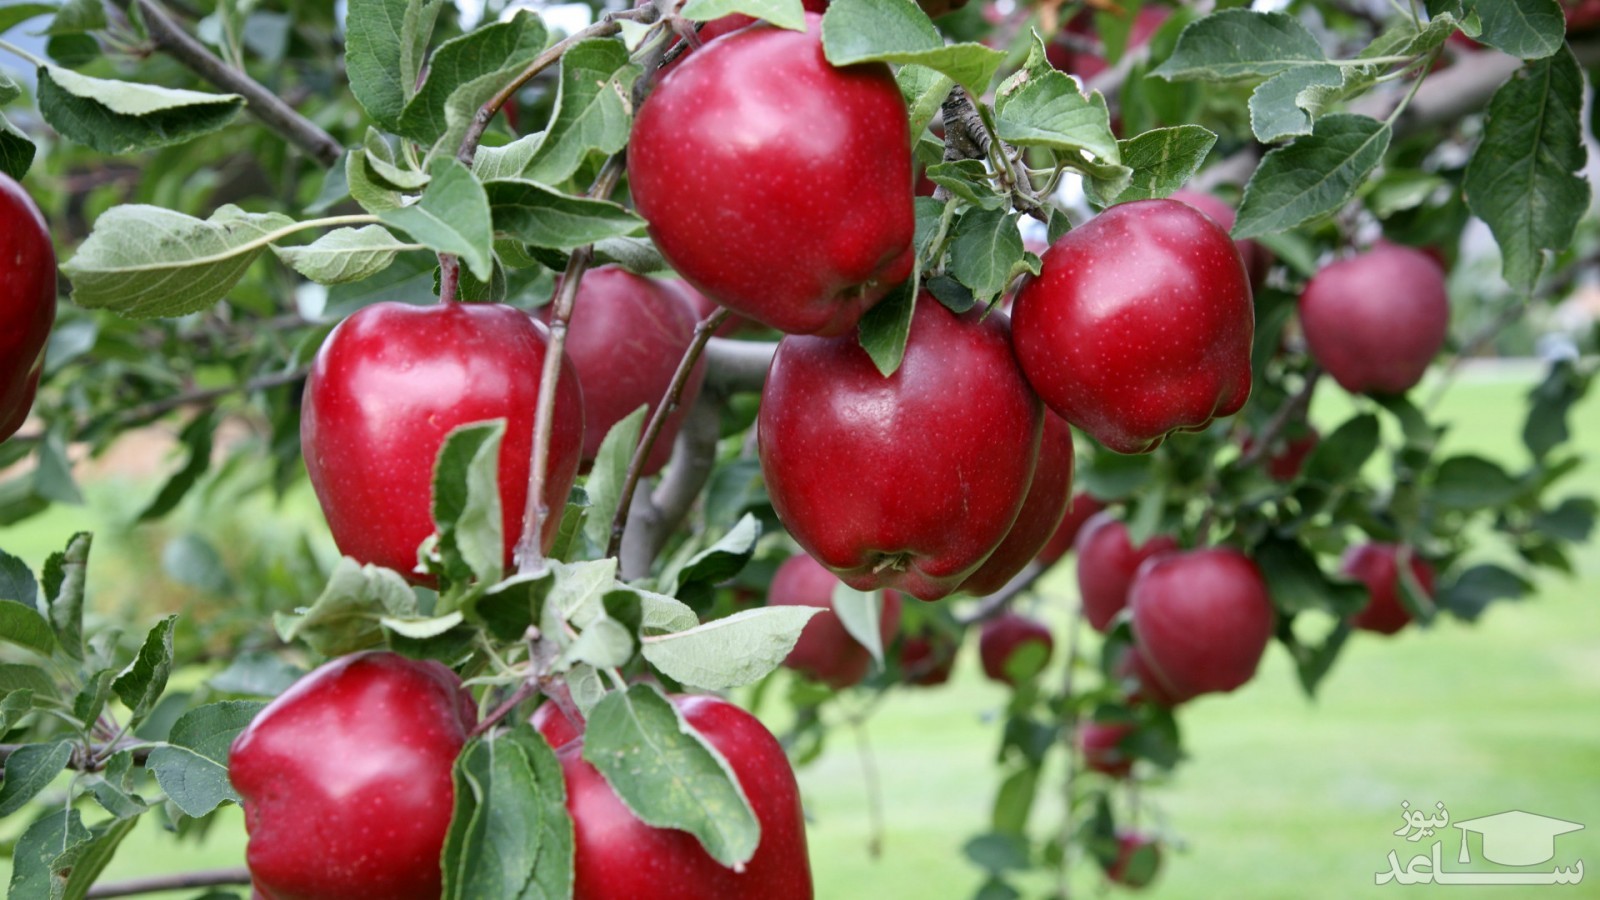 زیباترین شعر و متن فارسی در مورد سیب سرخ